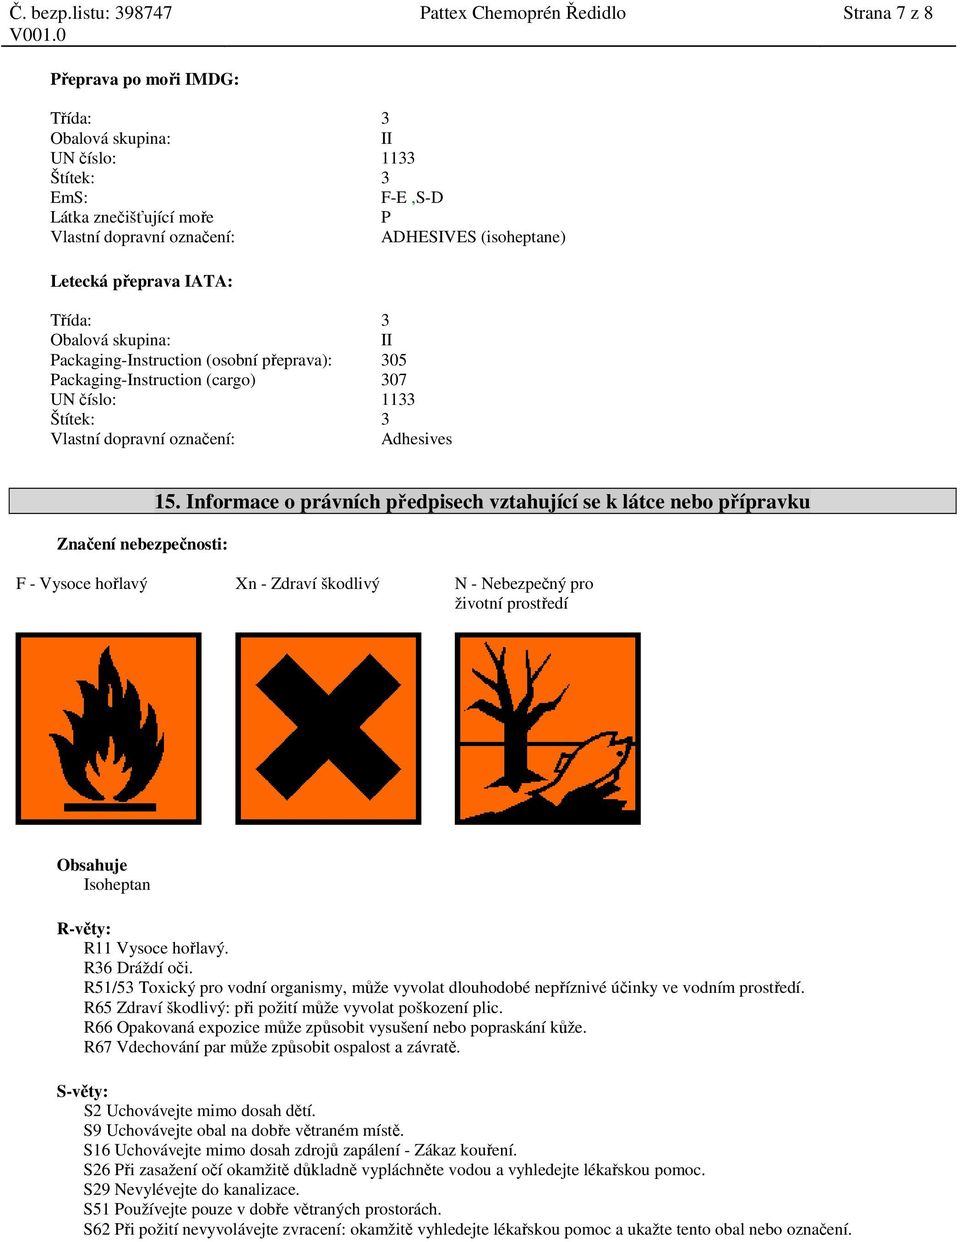 Informace o právních předpisech vztahující se k látce nebo přípravku F - Vysoce hořlavý Xn - Zdraví škodlivý N - Nebezpečný pro životní prostředí Obsahuje Isoheptan R-věty: R11 Vysoce hořlavý.